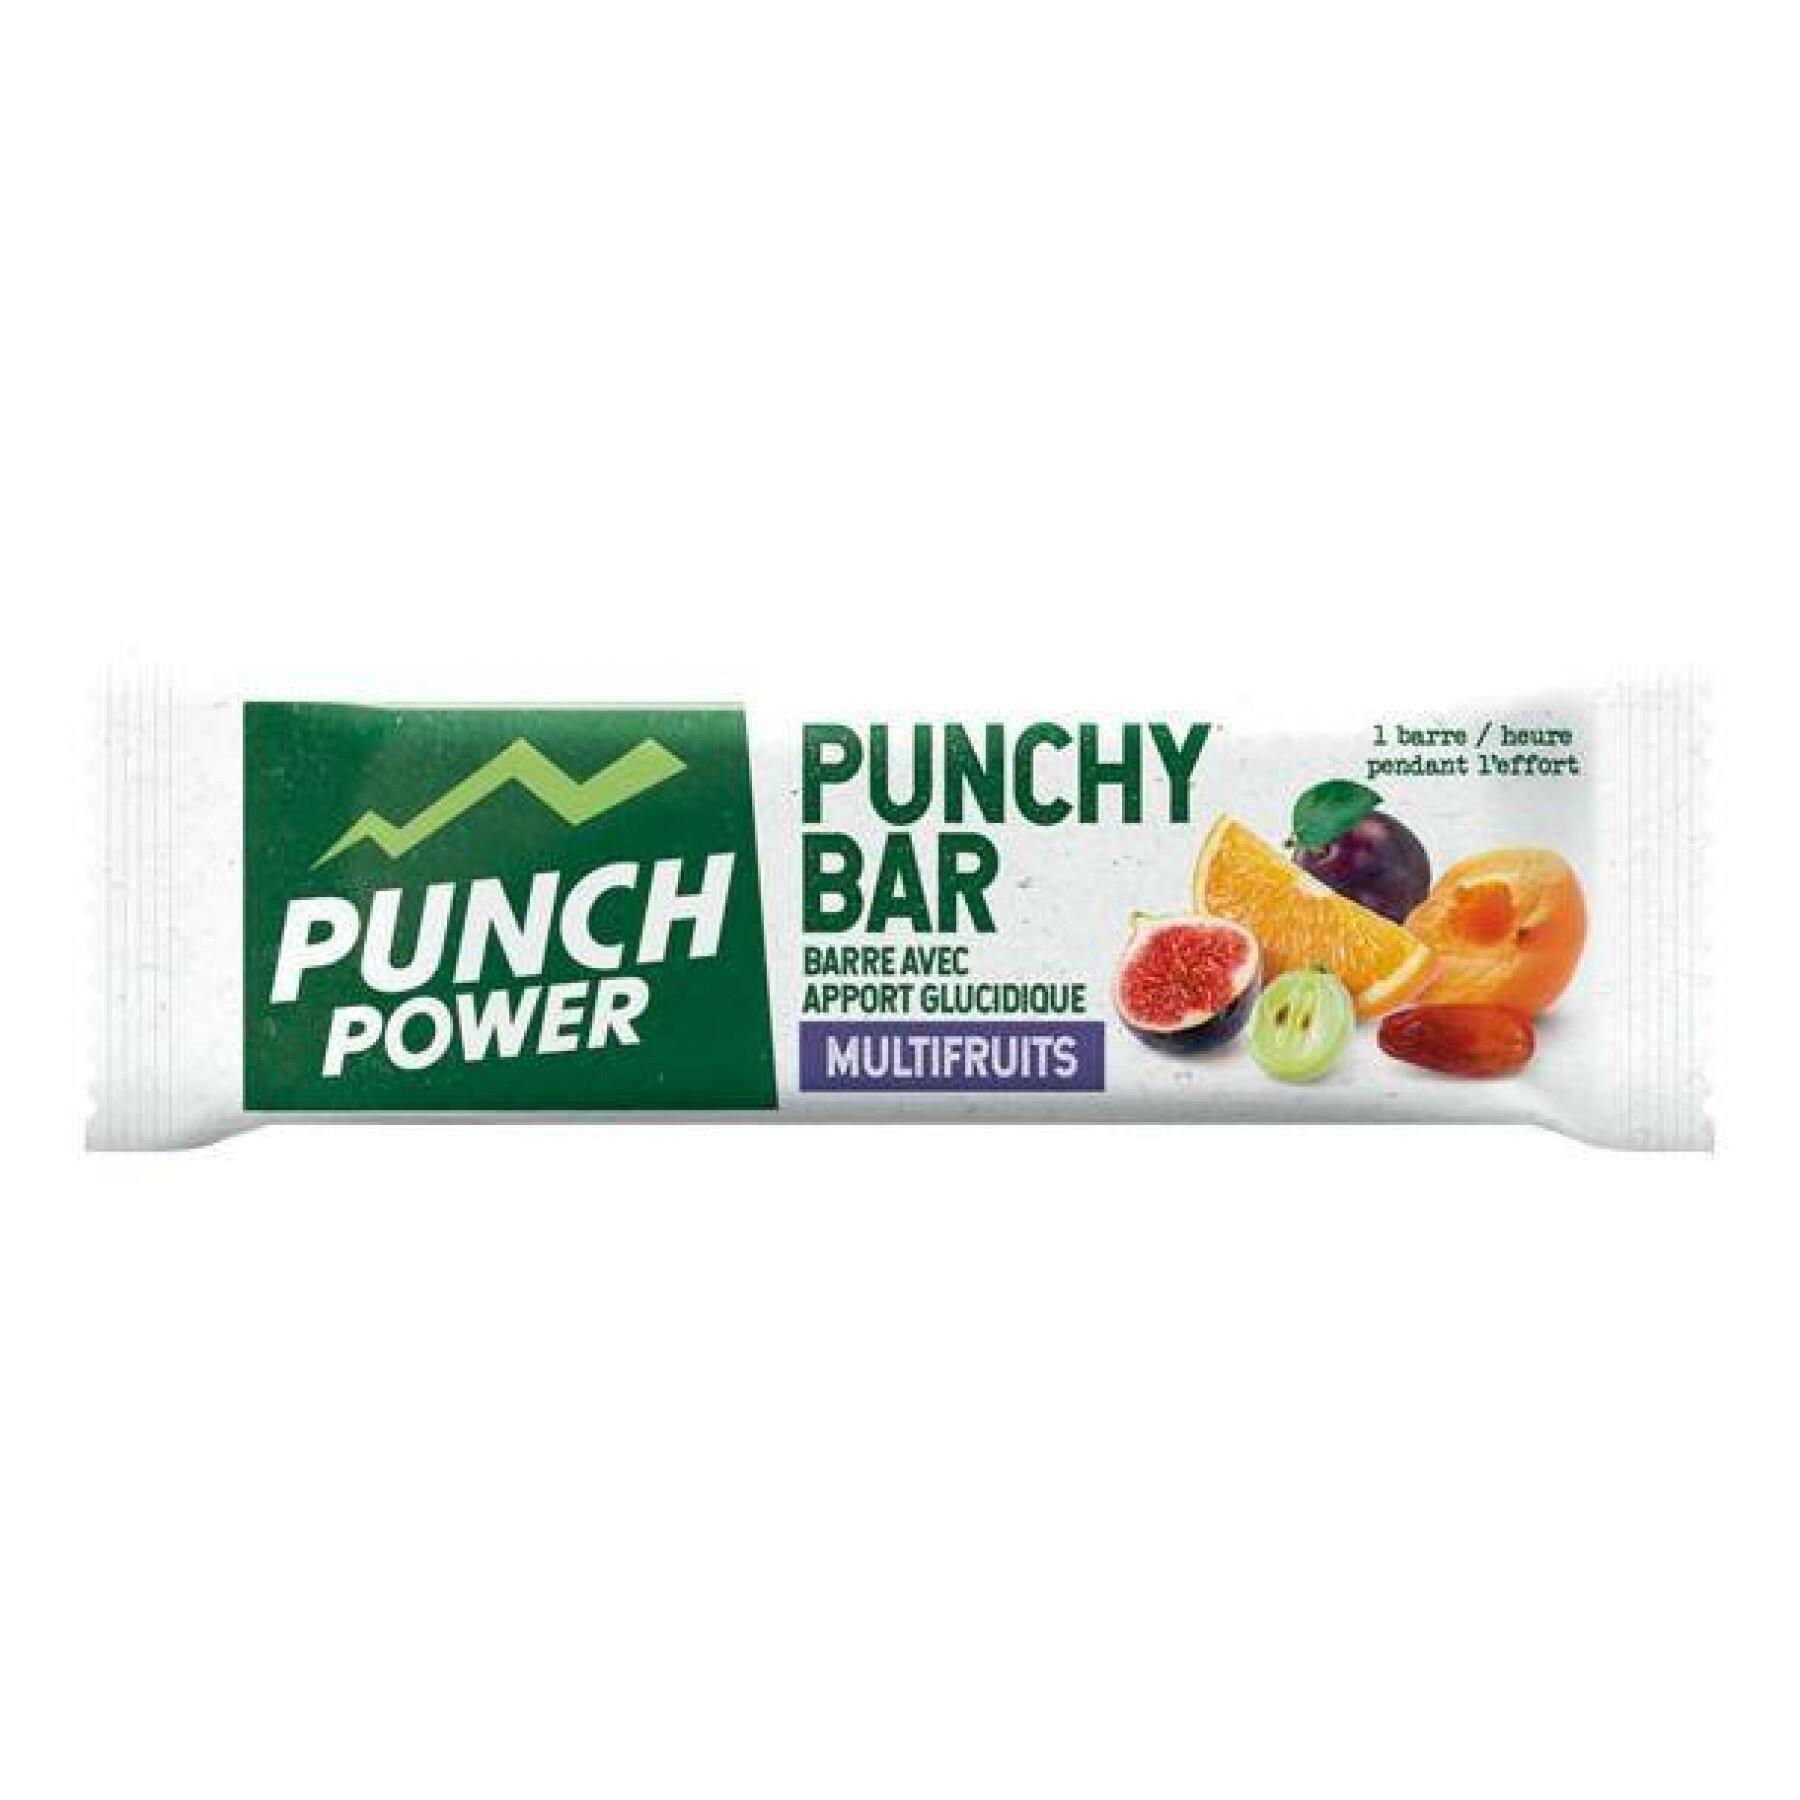 Muestra 40 barras de energía Punch Power Punchybar Multifruit